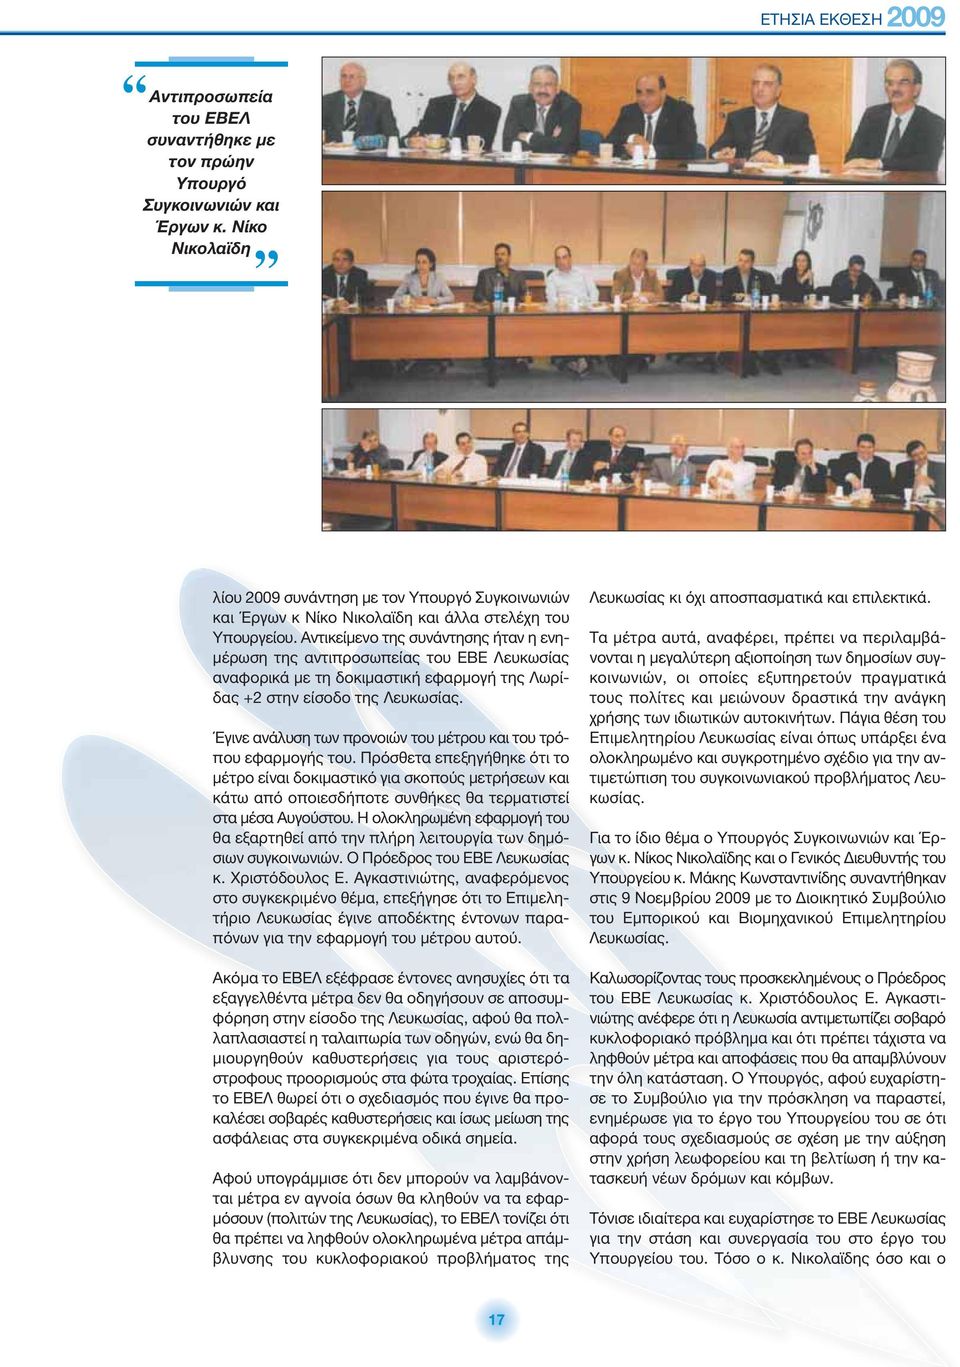 Αντικείμενο της συνάντησης ήταν η ενημέρωση της αντιπροσωπείας του ΕΒΕ Λευκωσίας αναφορικά με τη δοκιμαστική εφαρμογή της Λωρίδας +2 στην είσοδο της Λευκωσίας.